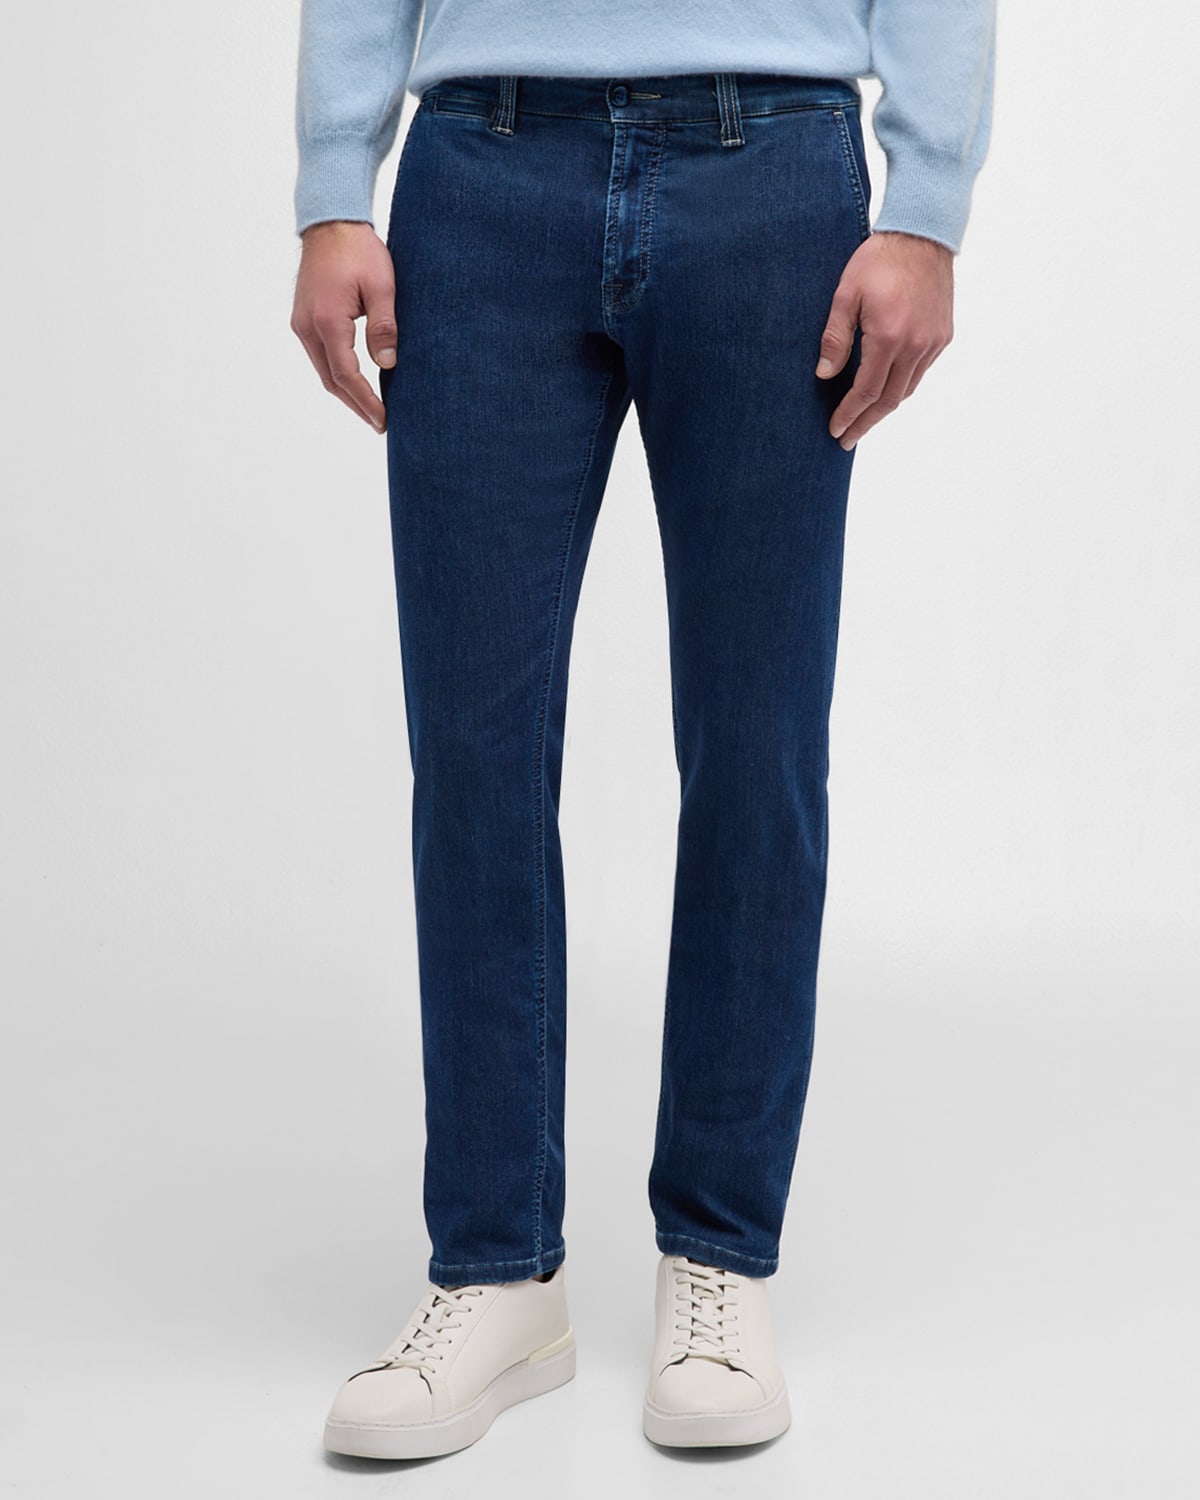 Men's Smooth Dark-Wash Jeans